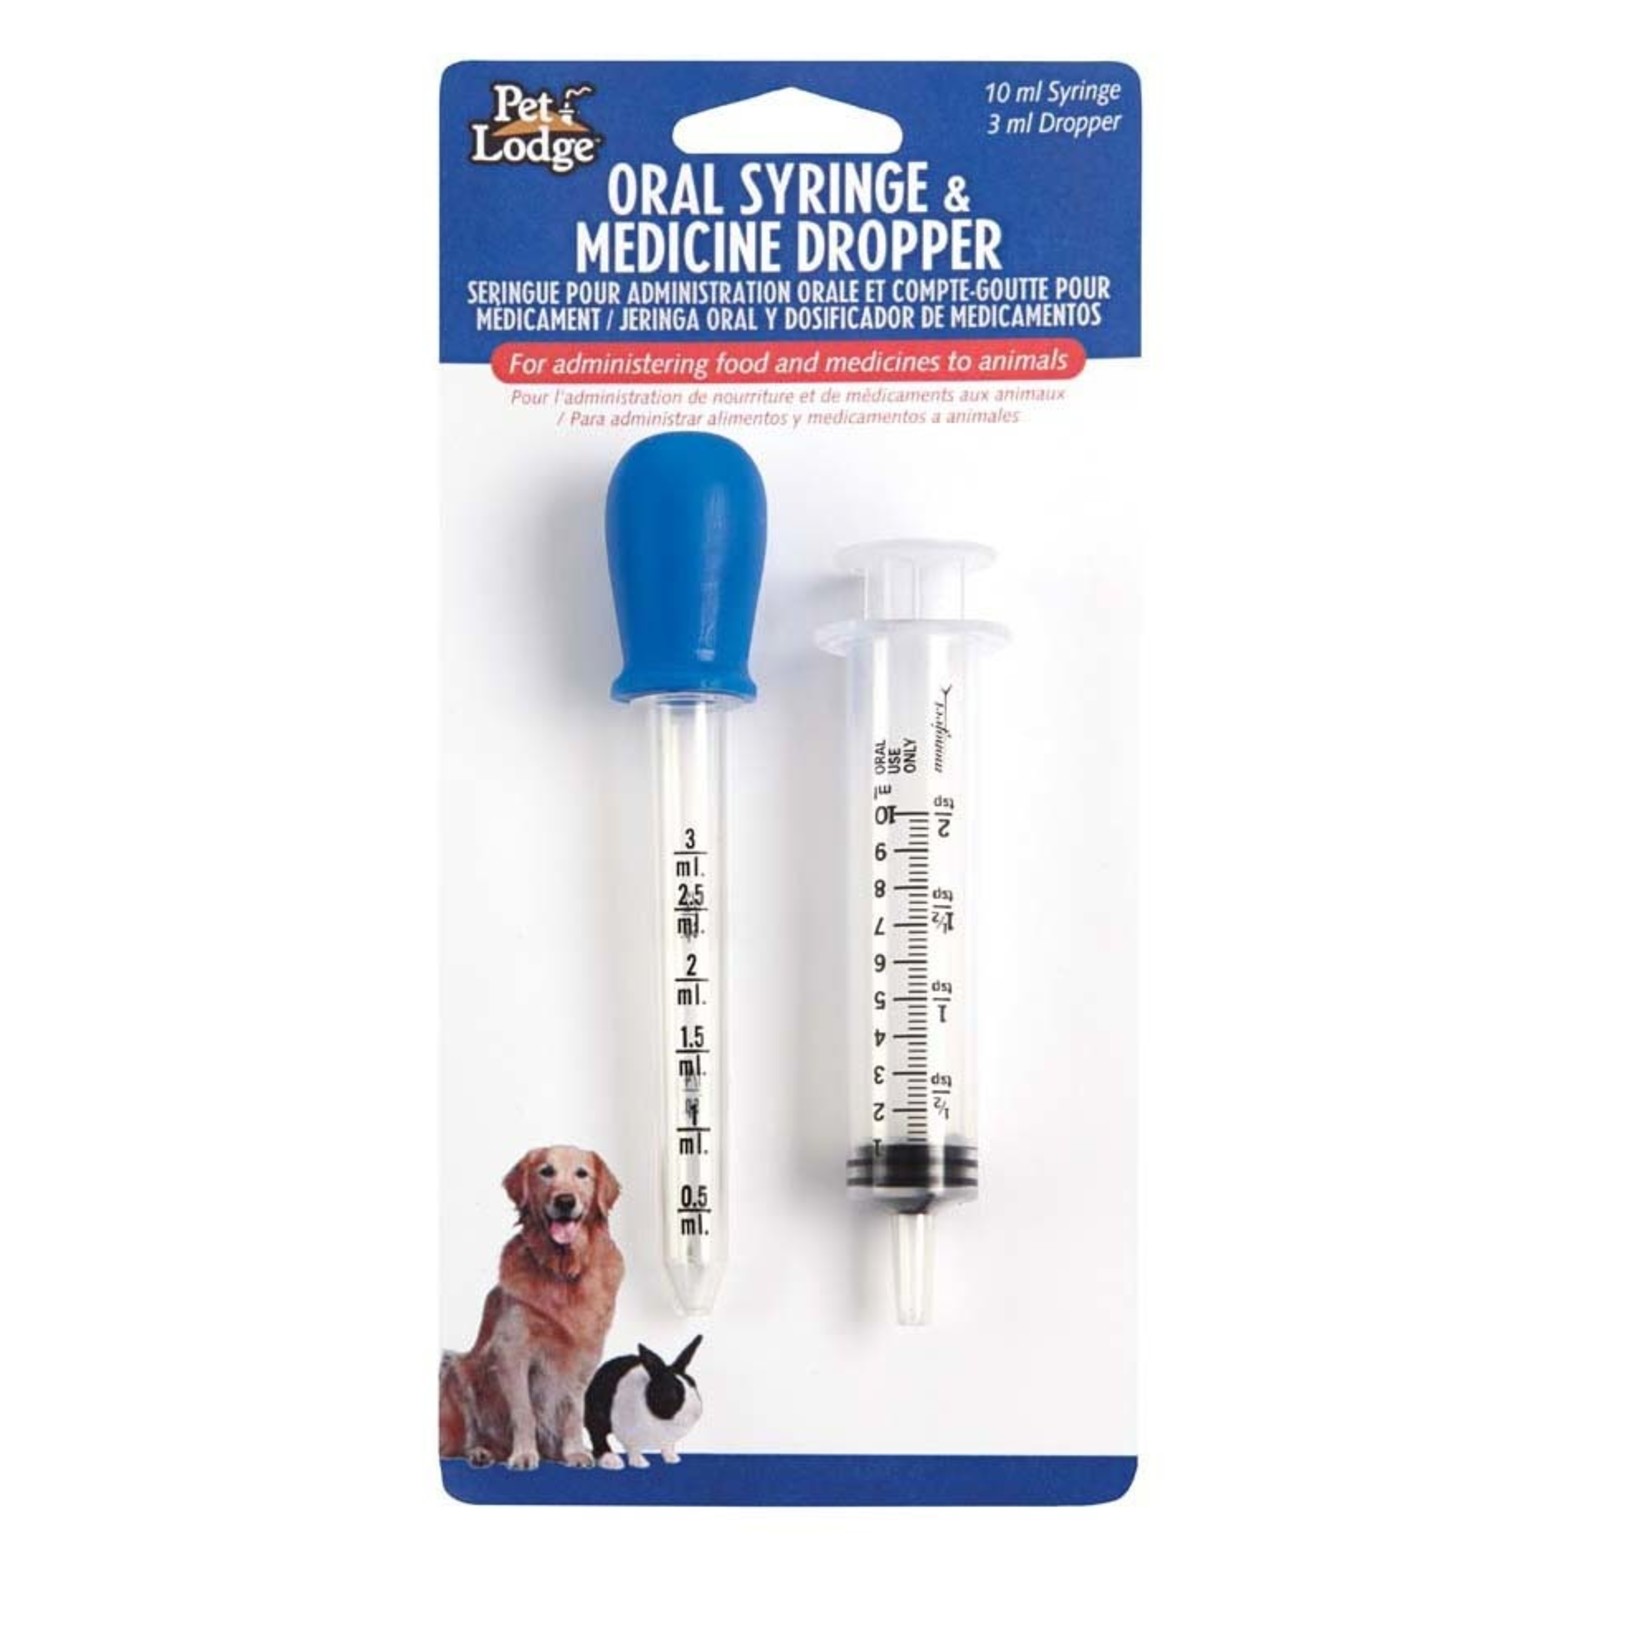 Pet Lodge Oral Syringe & Medicine Dropper